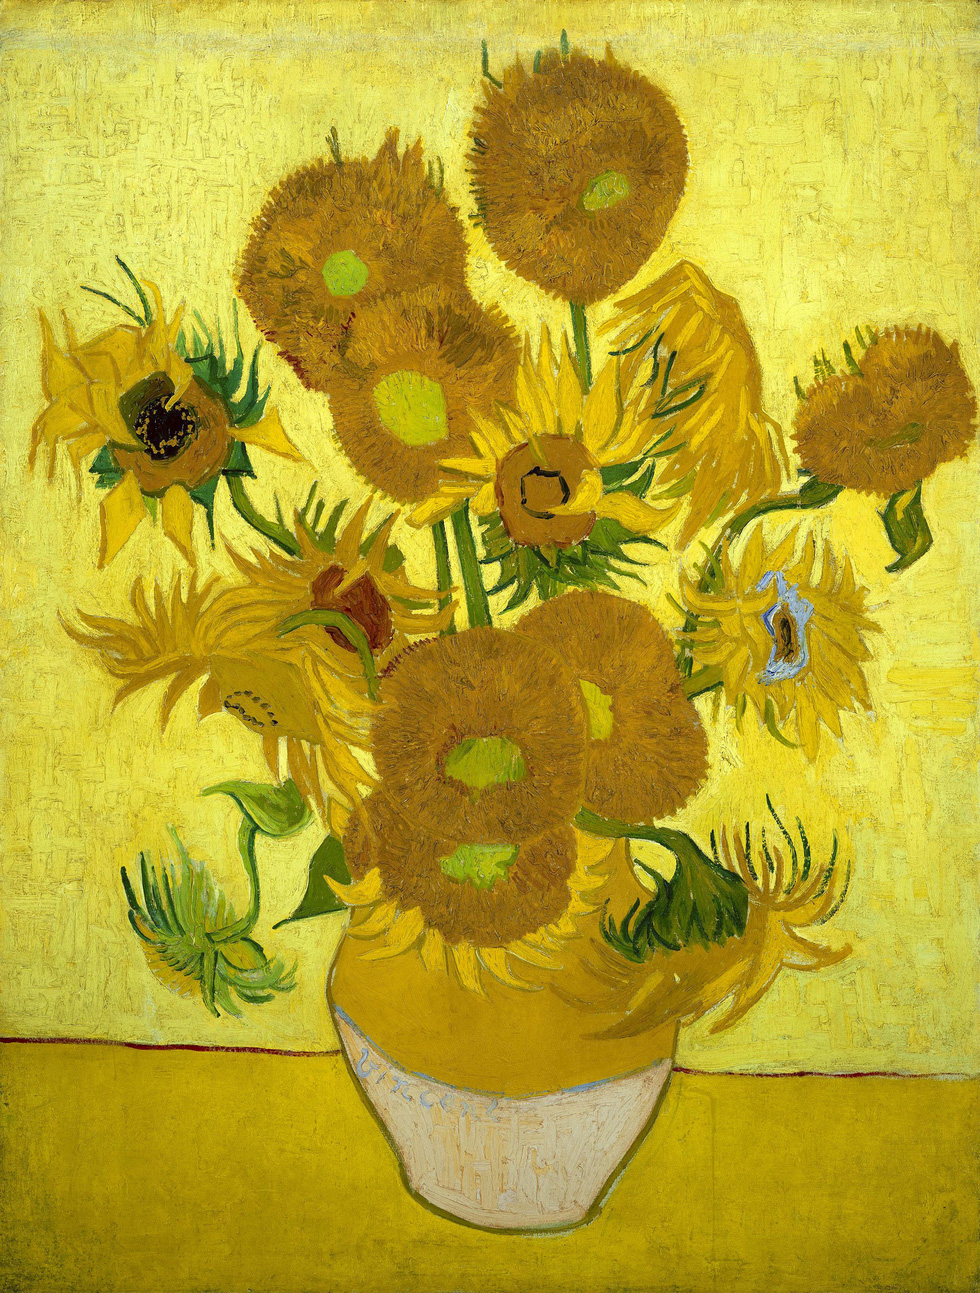 Lần đầu tiên xem tranh Van Gogh phiên bản số ở Việt Nam  - Ảnh 4.